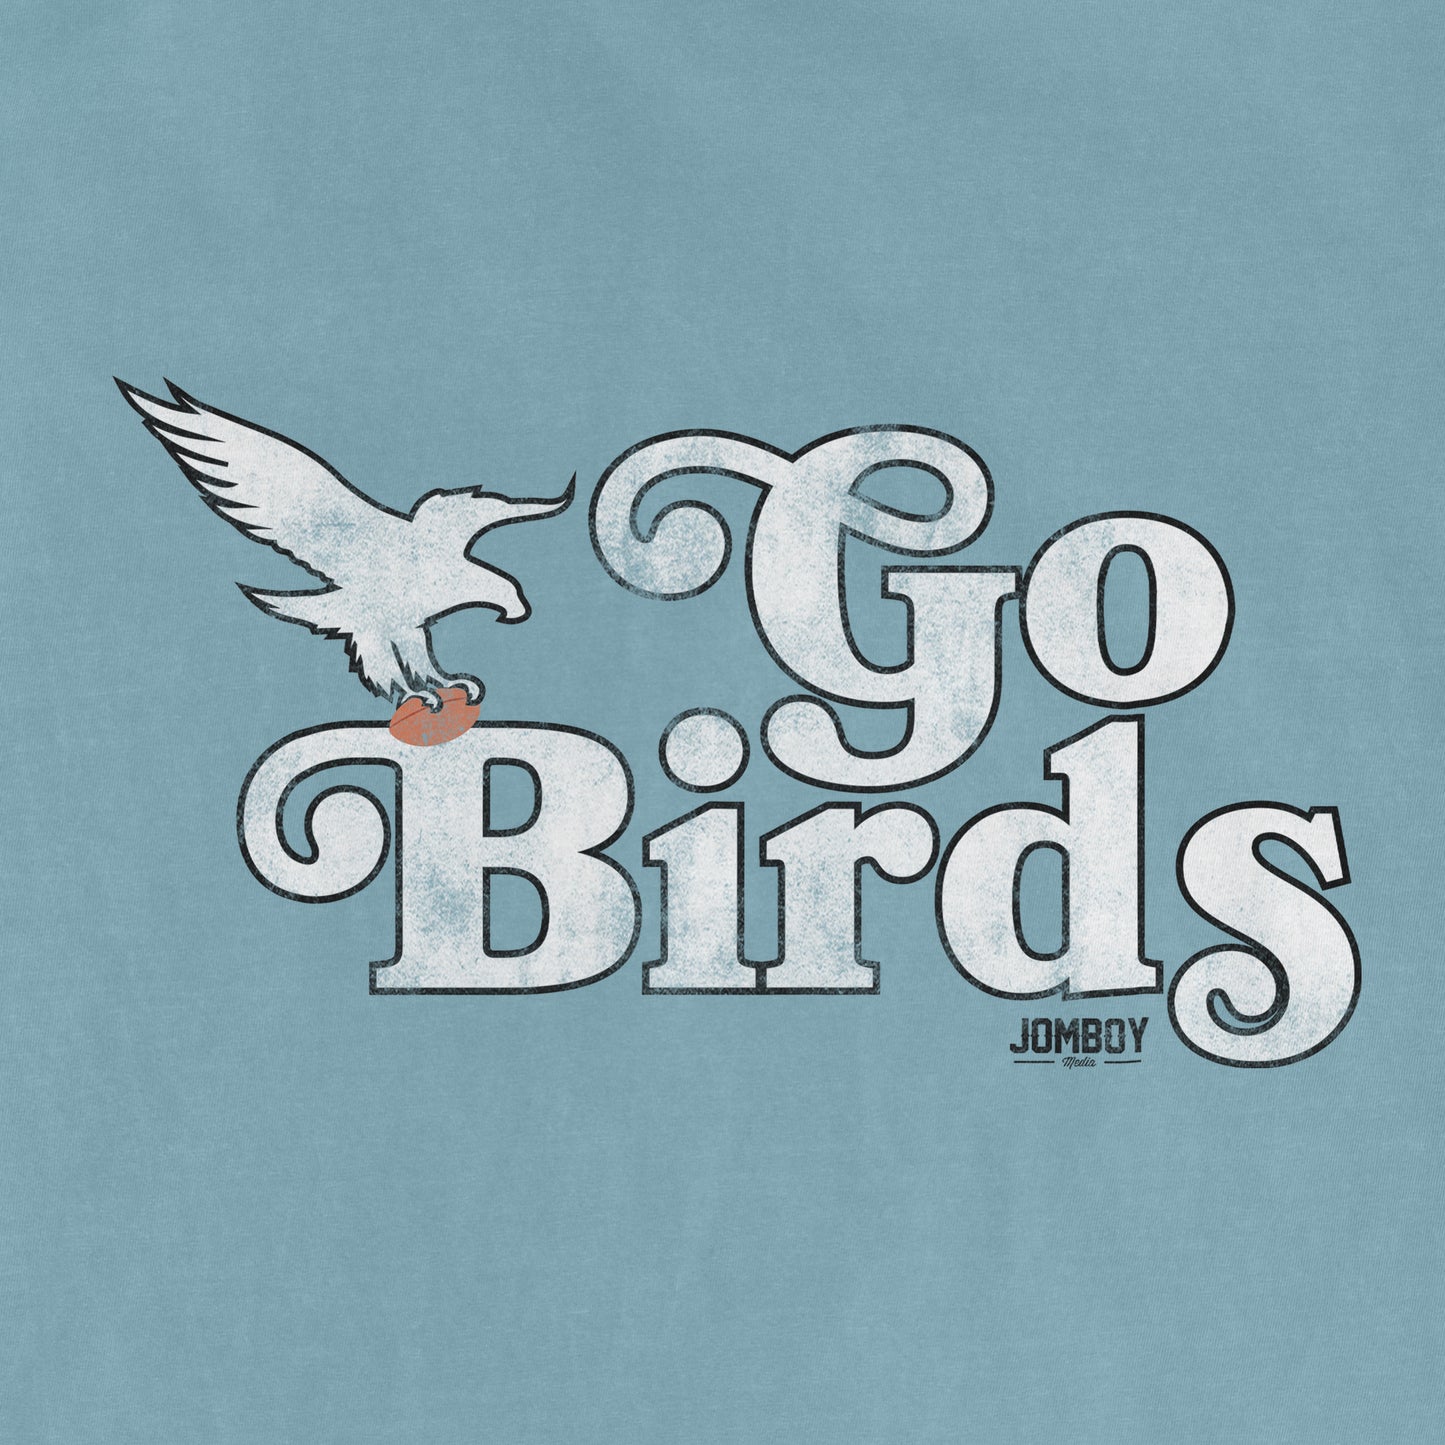 GO BIRDS | Comfort Colors® Vintage Tee